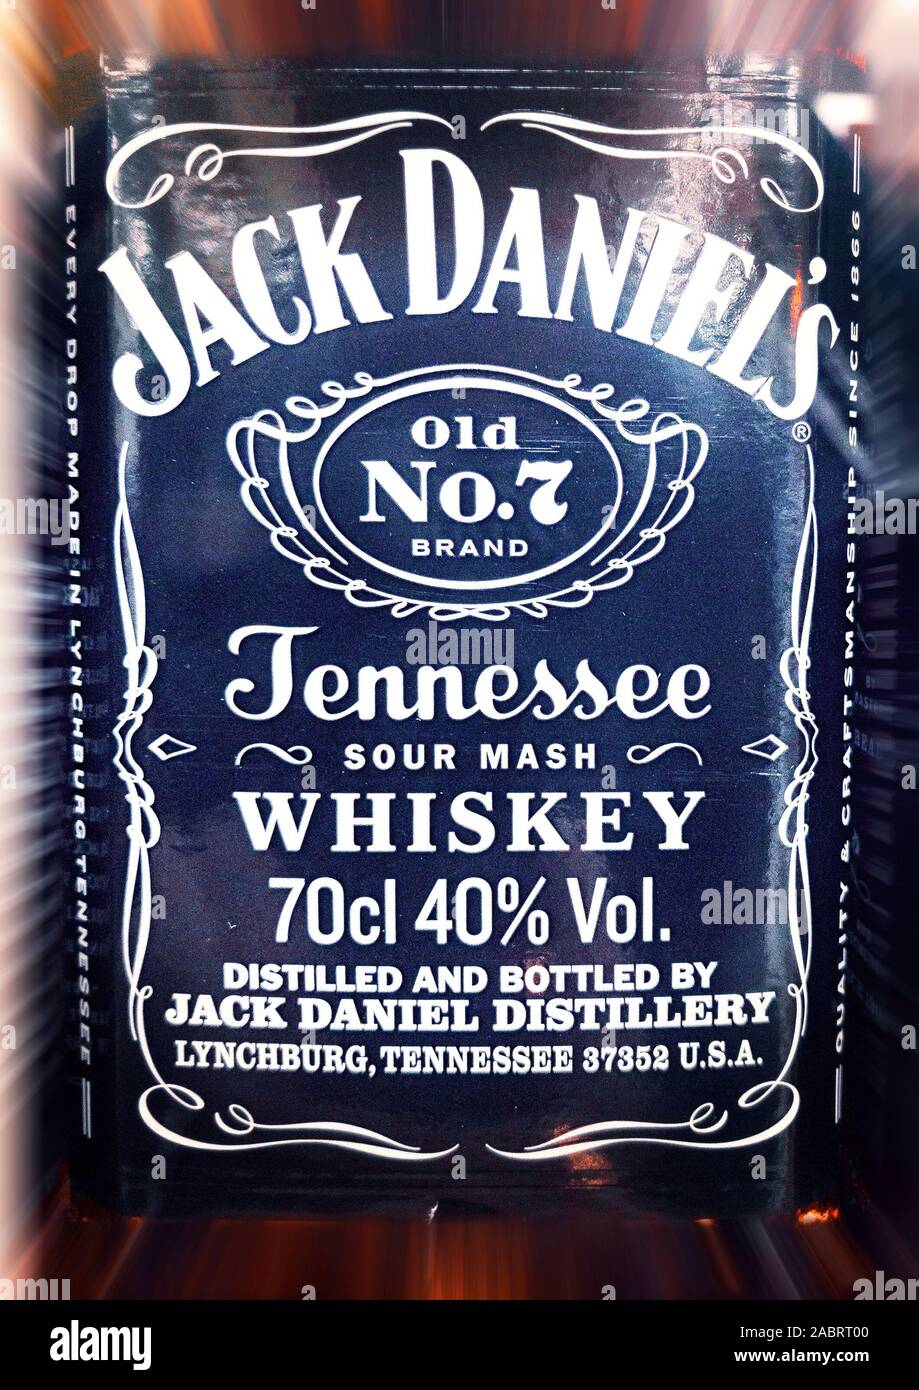 Etiqueta del whisky Jack Daniels nº 7 Foto de stock